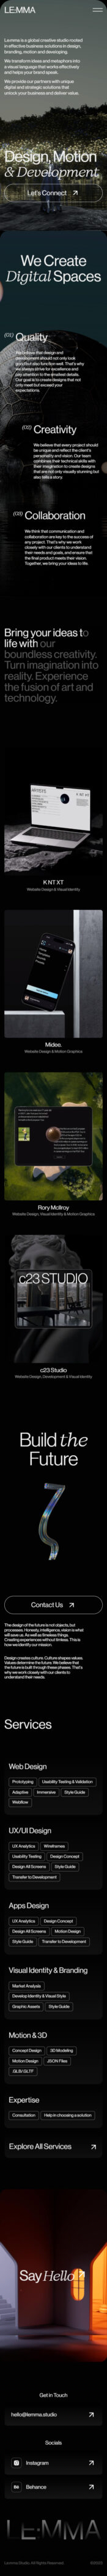 Le:mma studio design agencies 3d